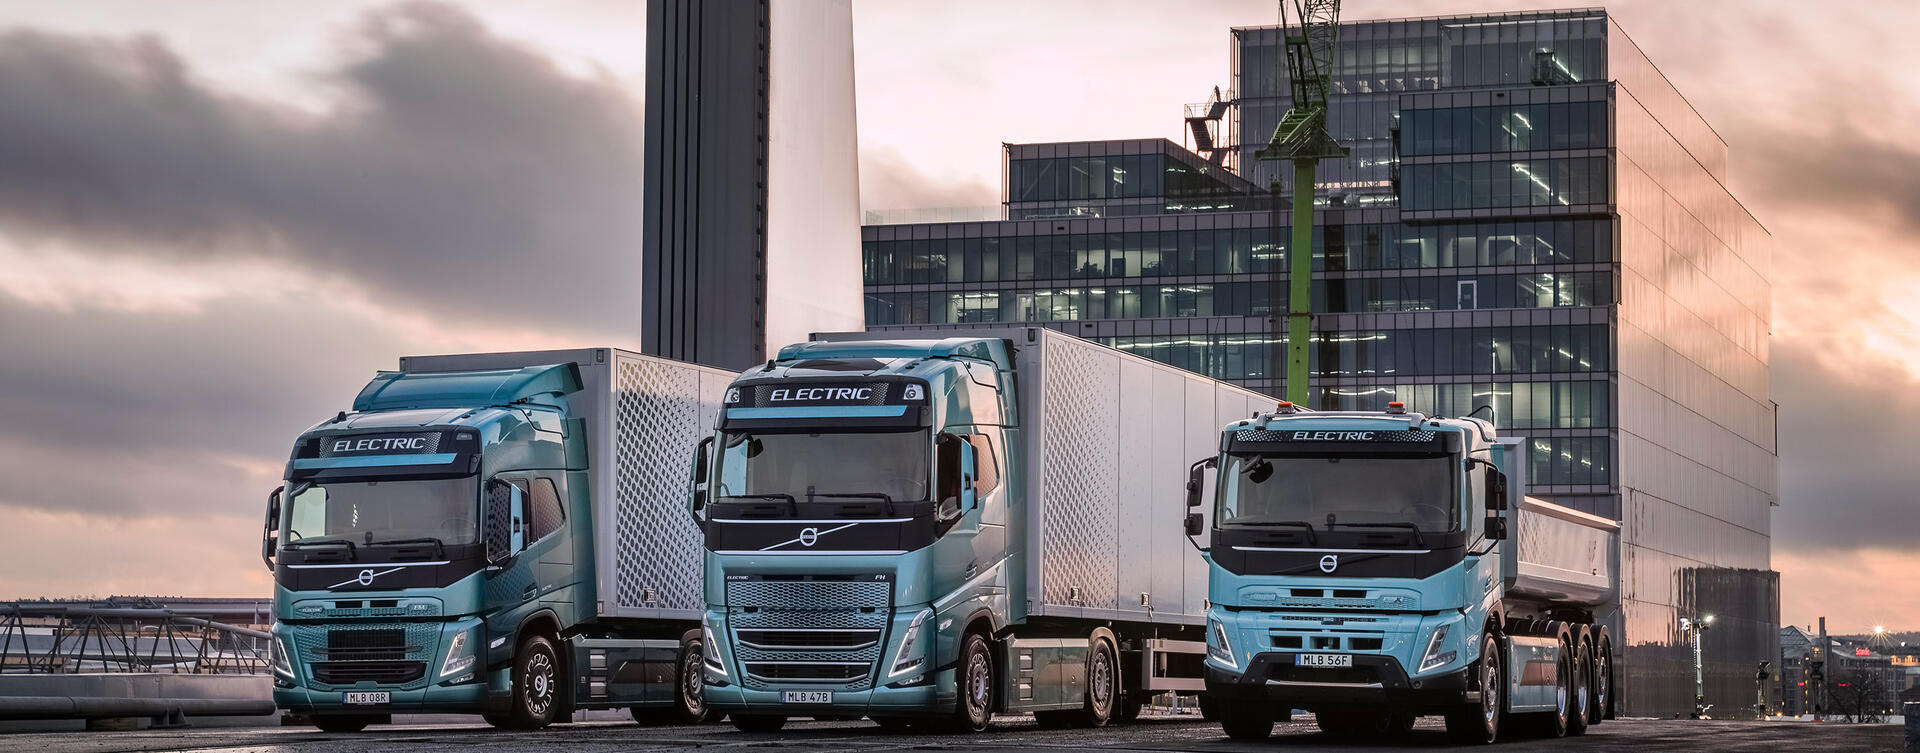 Nijwa-truck-en-bus-maak-kennis-met-onze-elektrische-vrachtwagens-voor-zware-ladingen